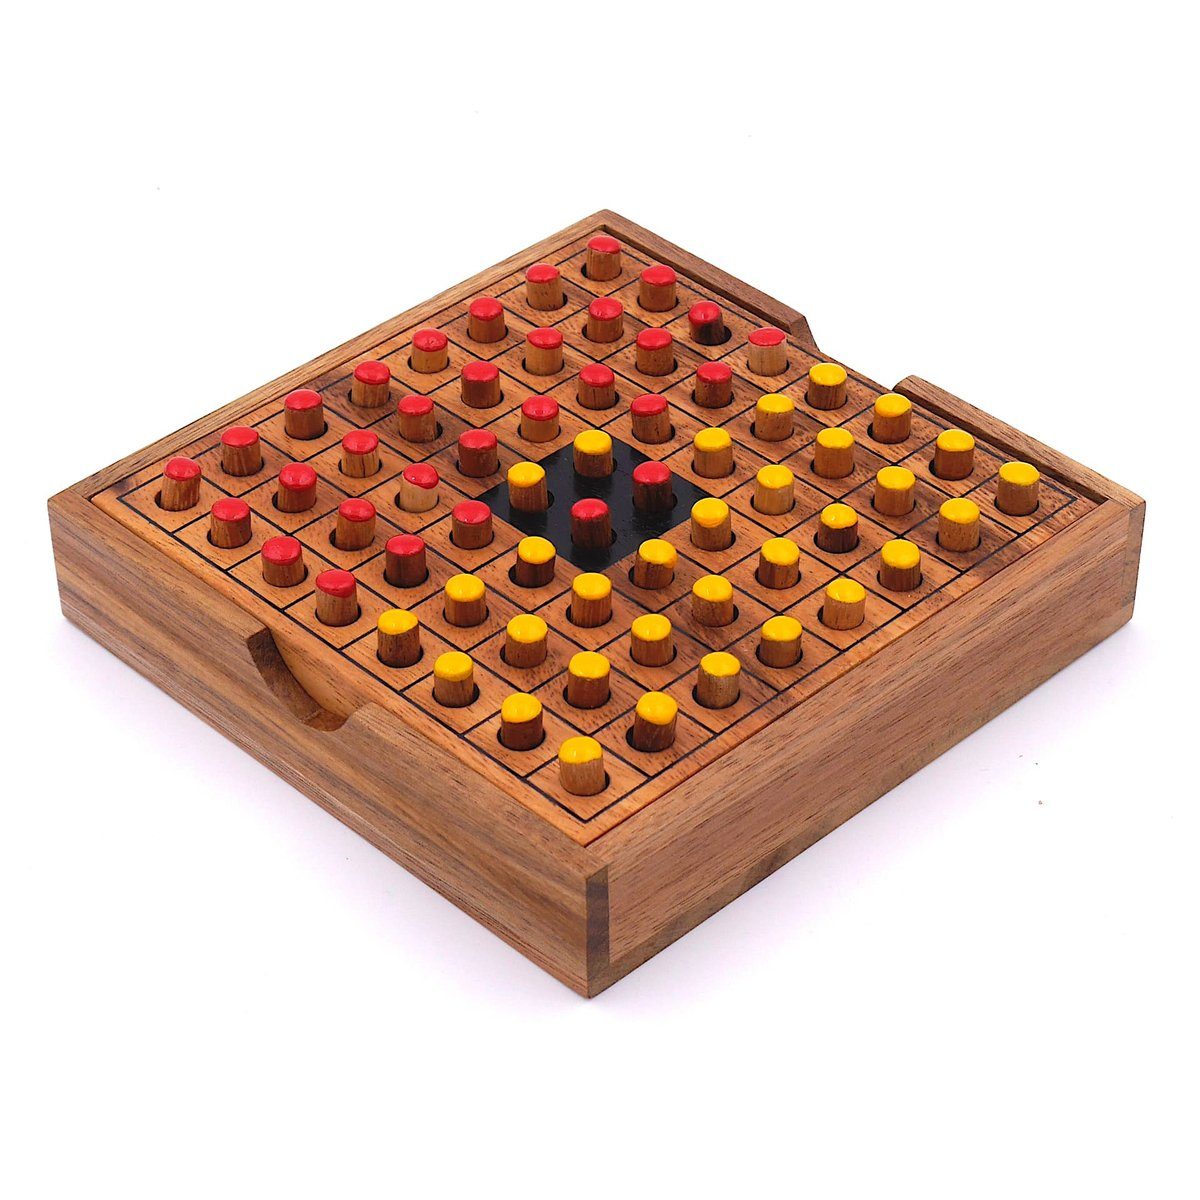 rot/gelb aus Denkspiele 2 Reversi ROMBOL für Holz, – Brettspiel Interessantes Strategiespiel edlem Holzspiel Spiel, Personen